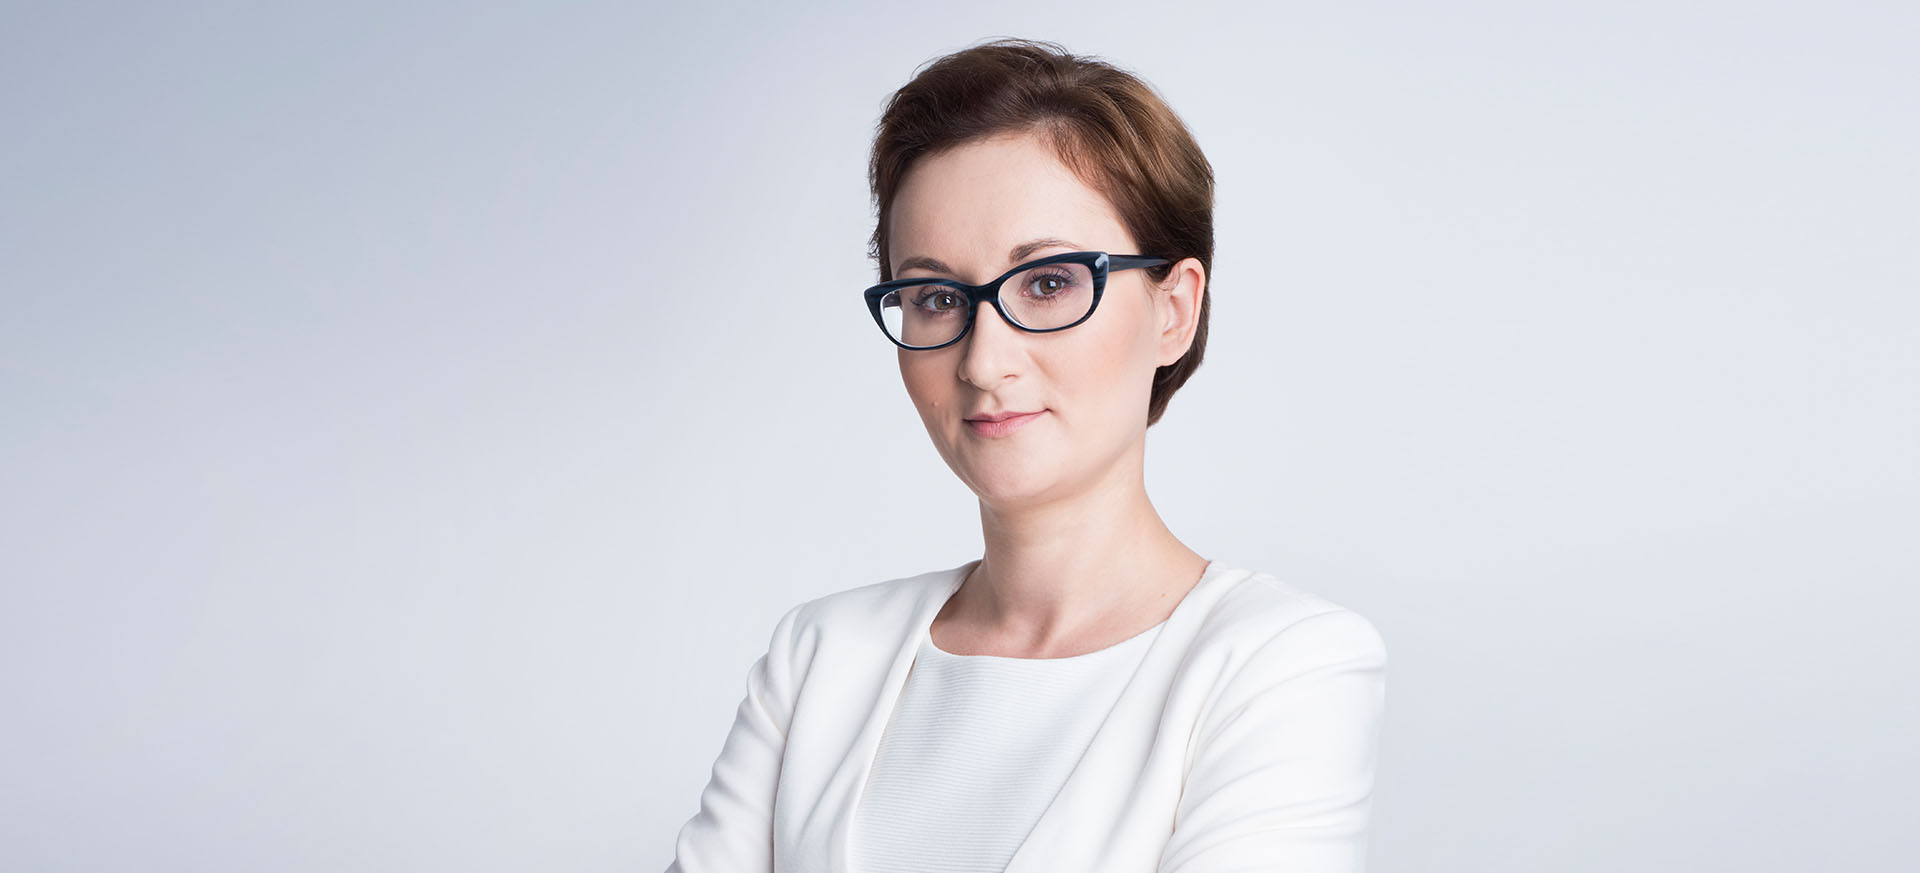 Radca prawny of counsel, doktor nauk prawnych Kamila Piernik-Wierzbowska 